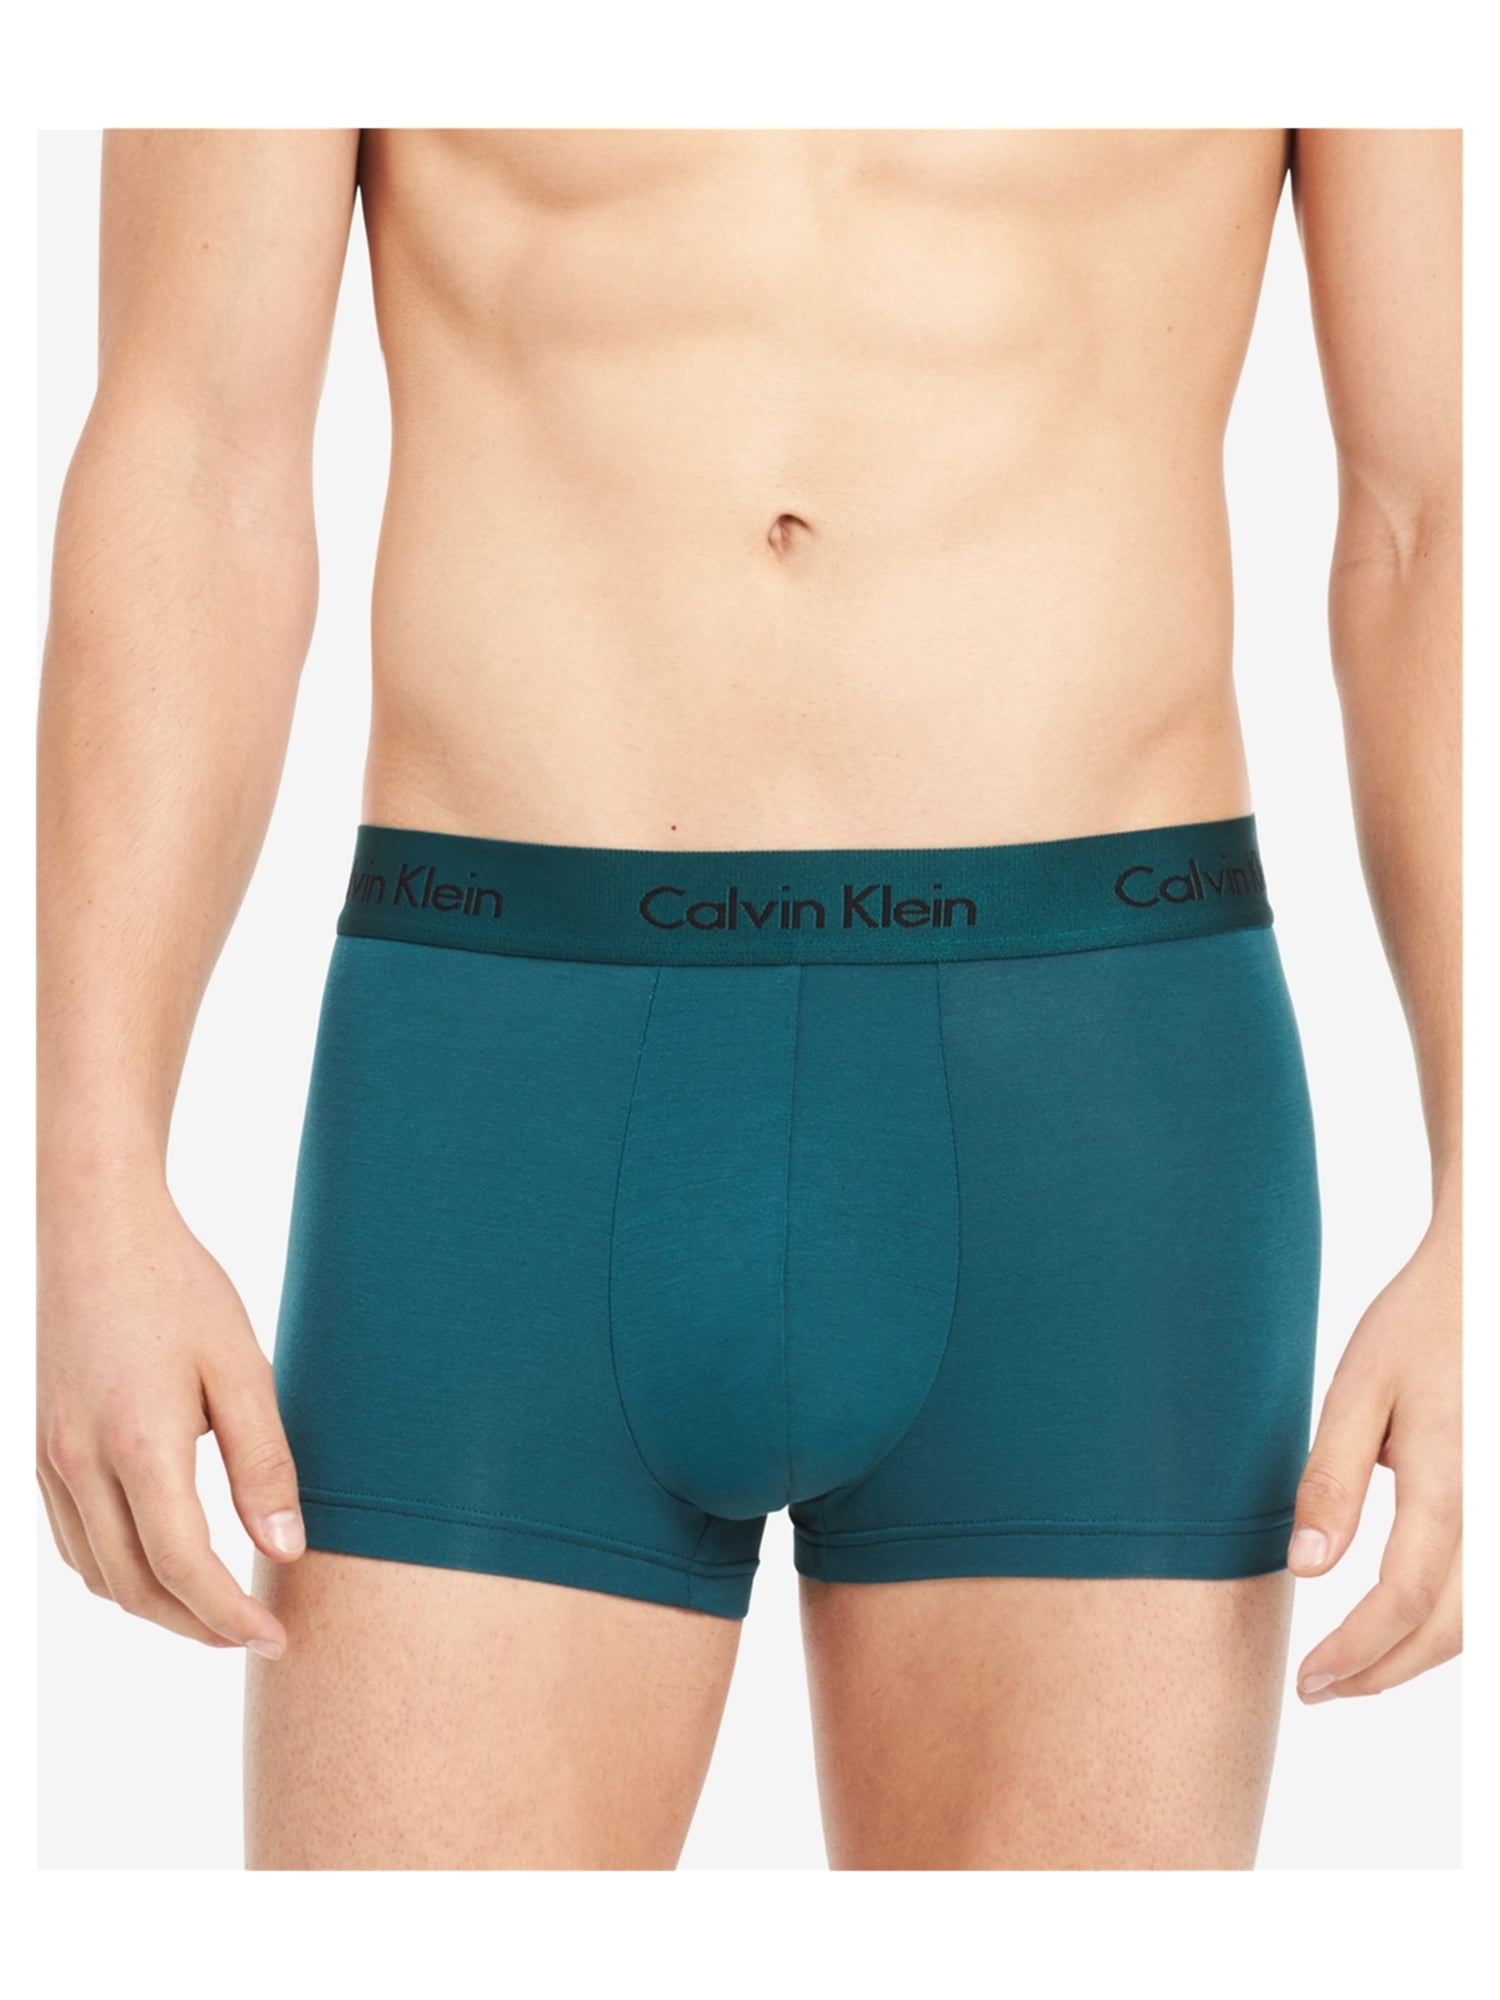 calvin klein underwear mens